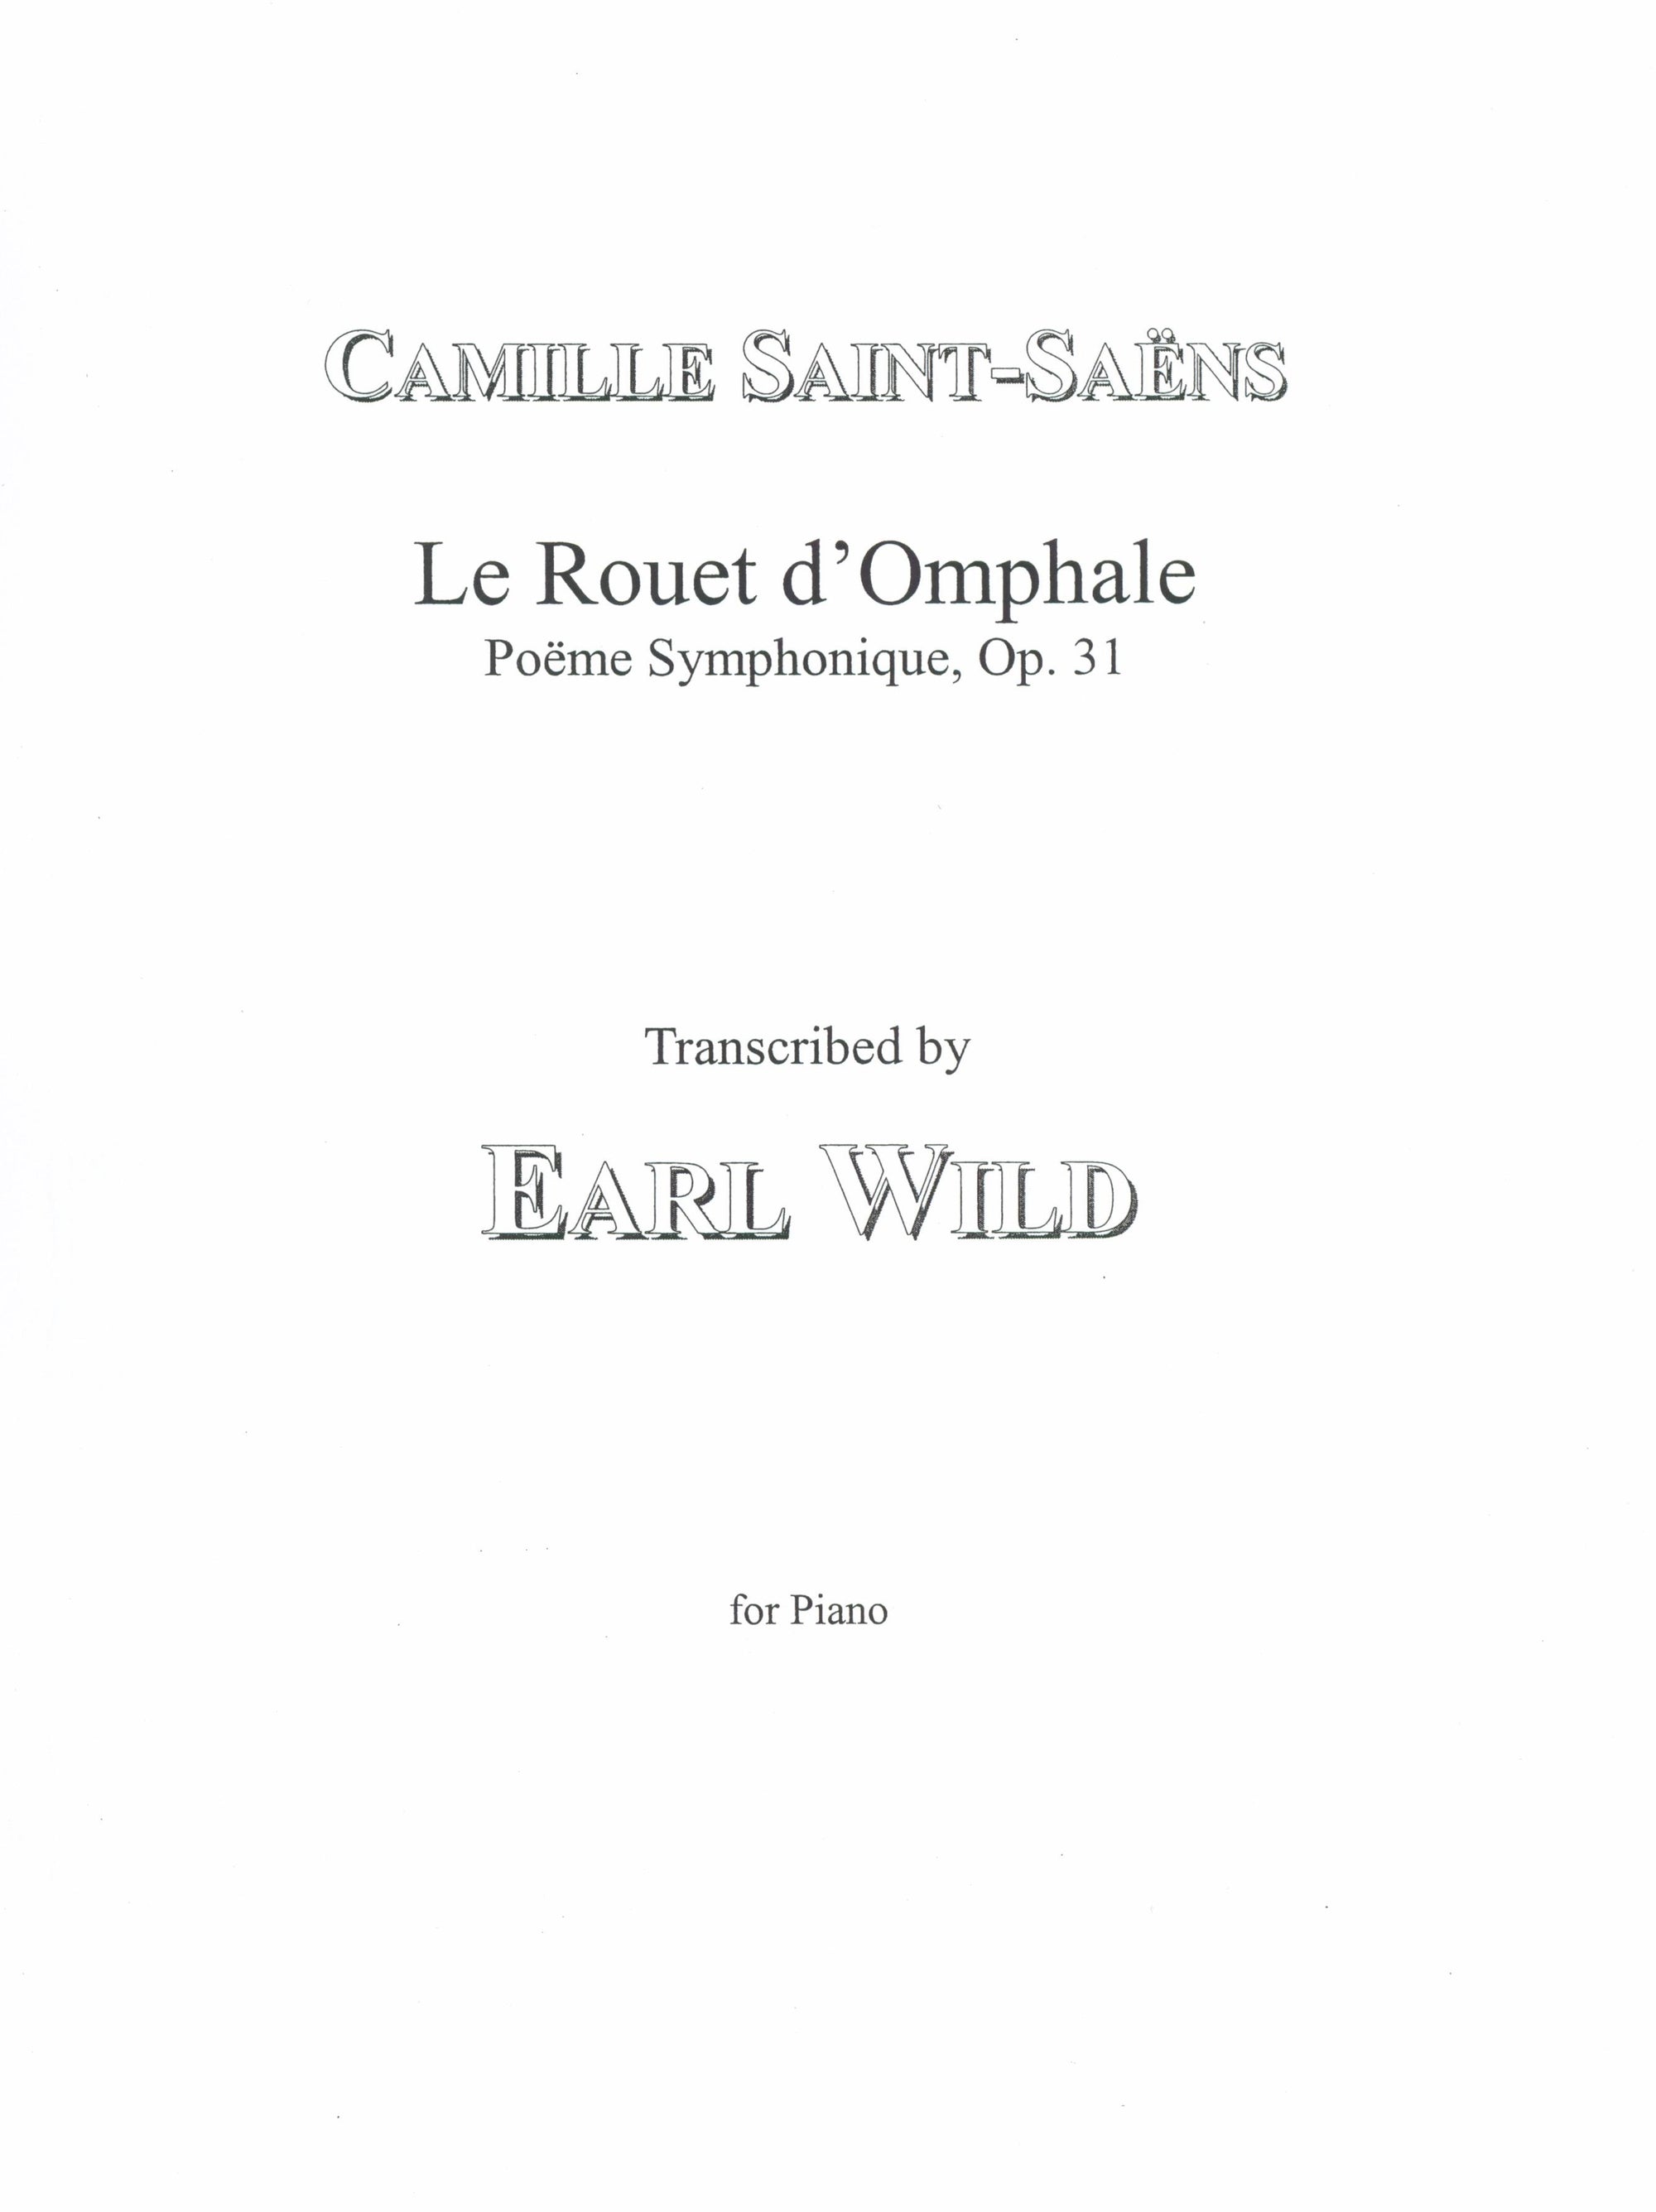 Saint-Saëns-Wild: Le Rouet d'Omphale, Op. 31